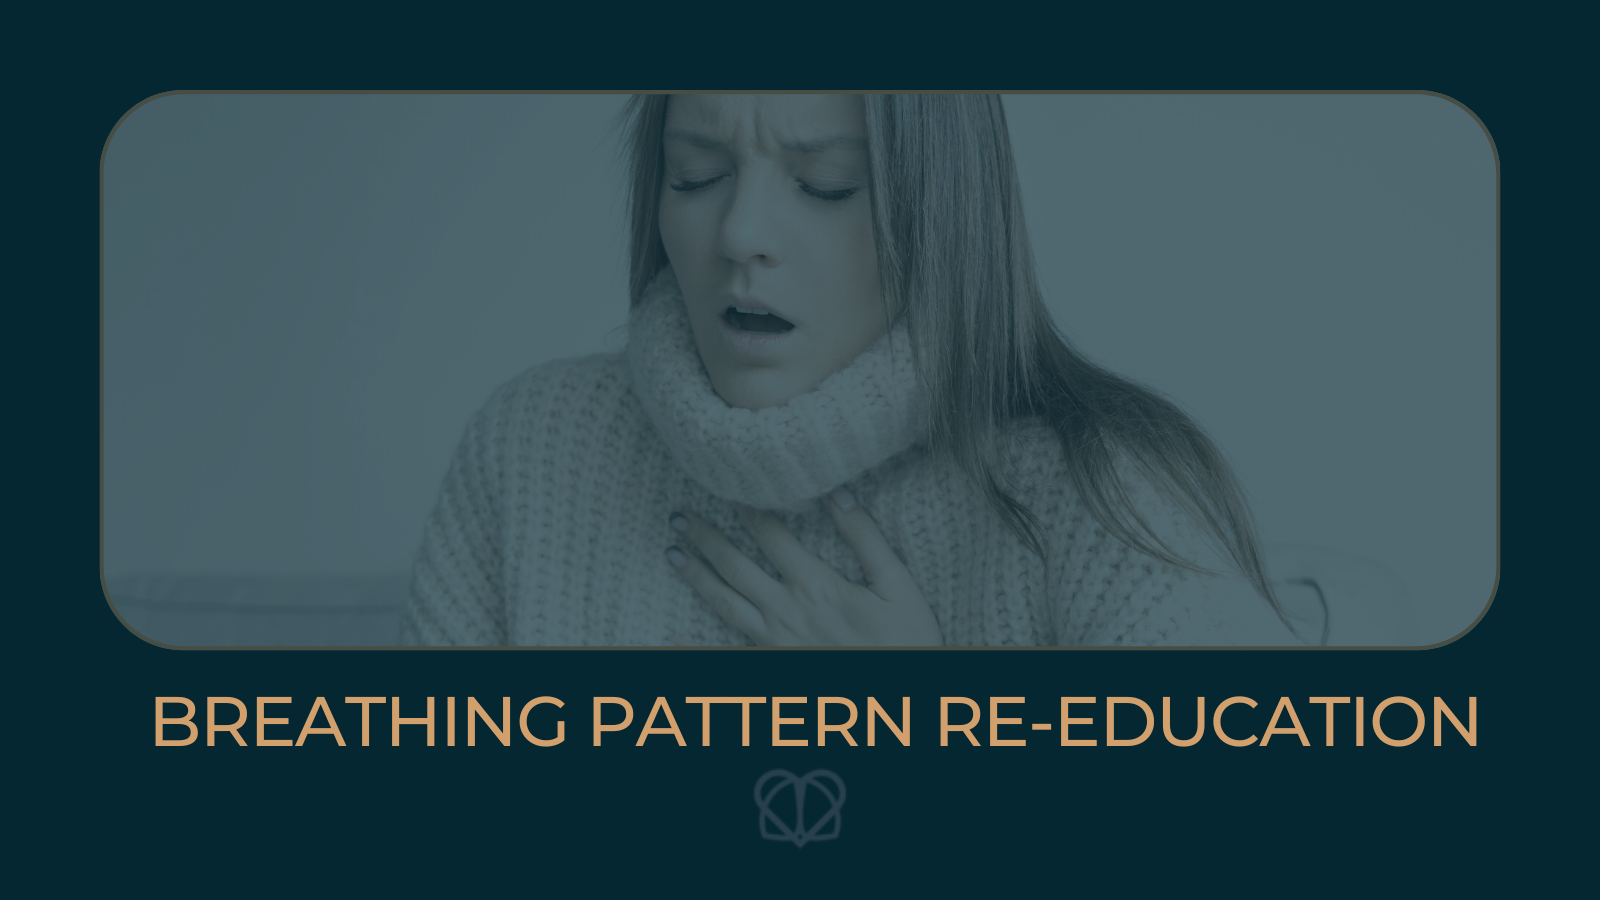 Breathing pattern re-education